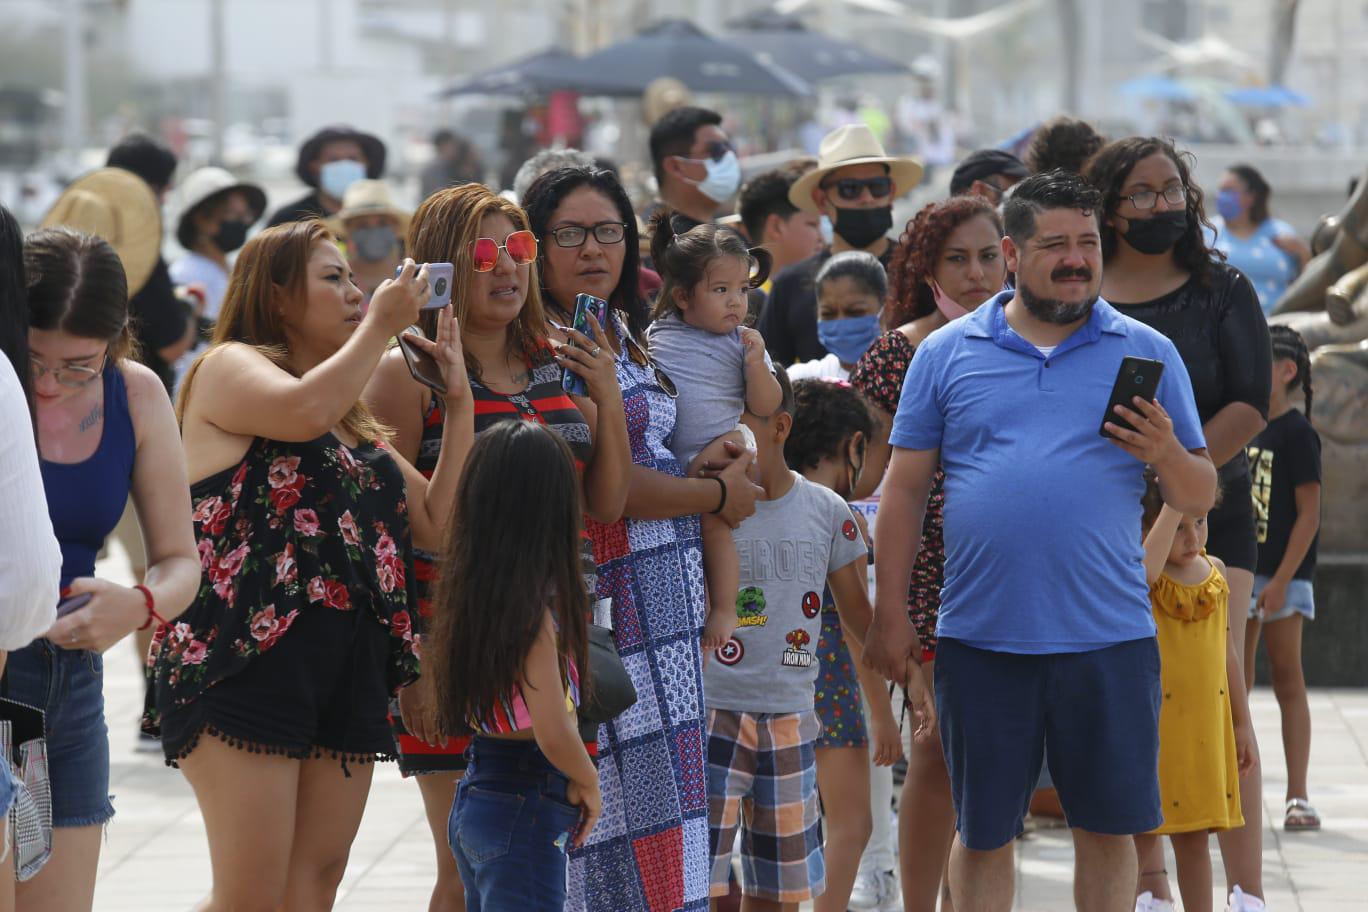 $!Pese al calor y la pandemia, turistas salen a disfrutar las playas y atractivos de Mazatlán